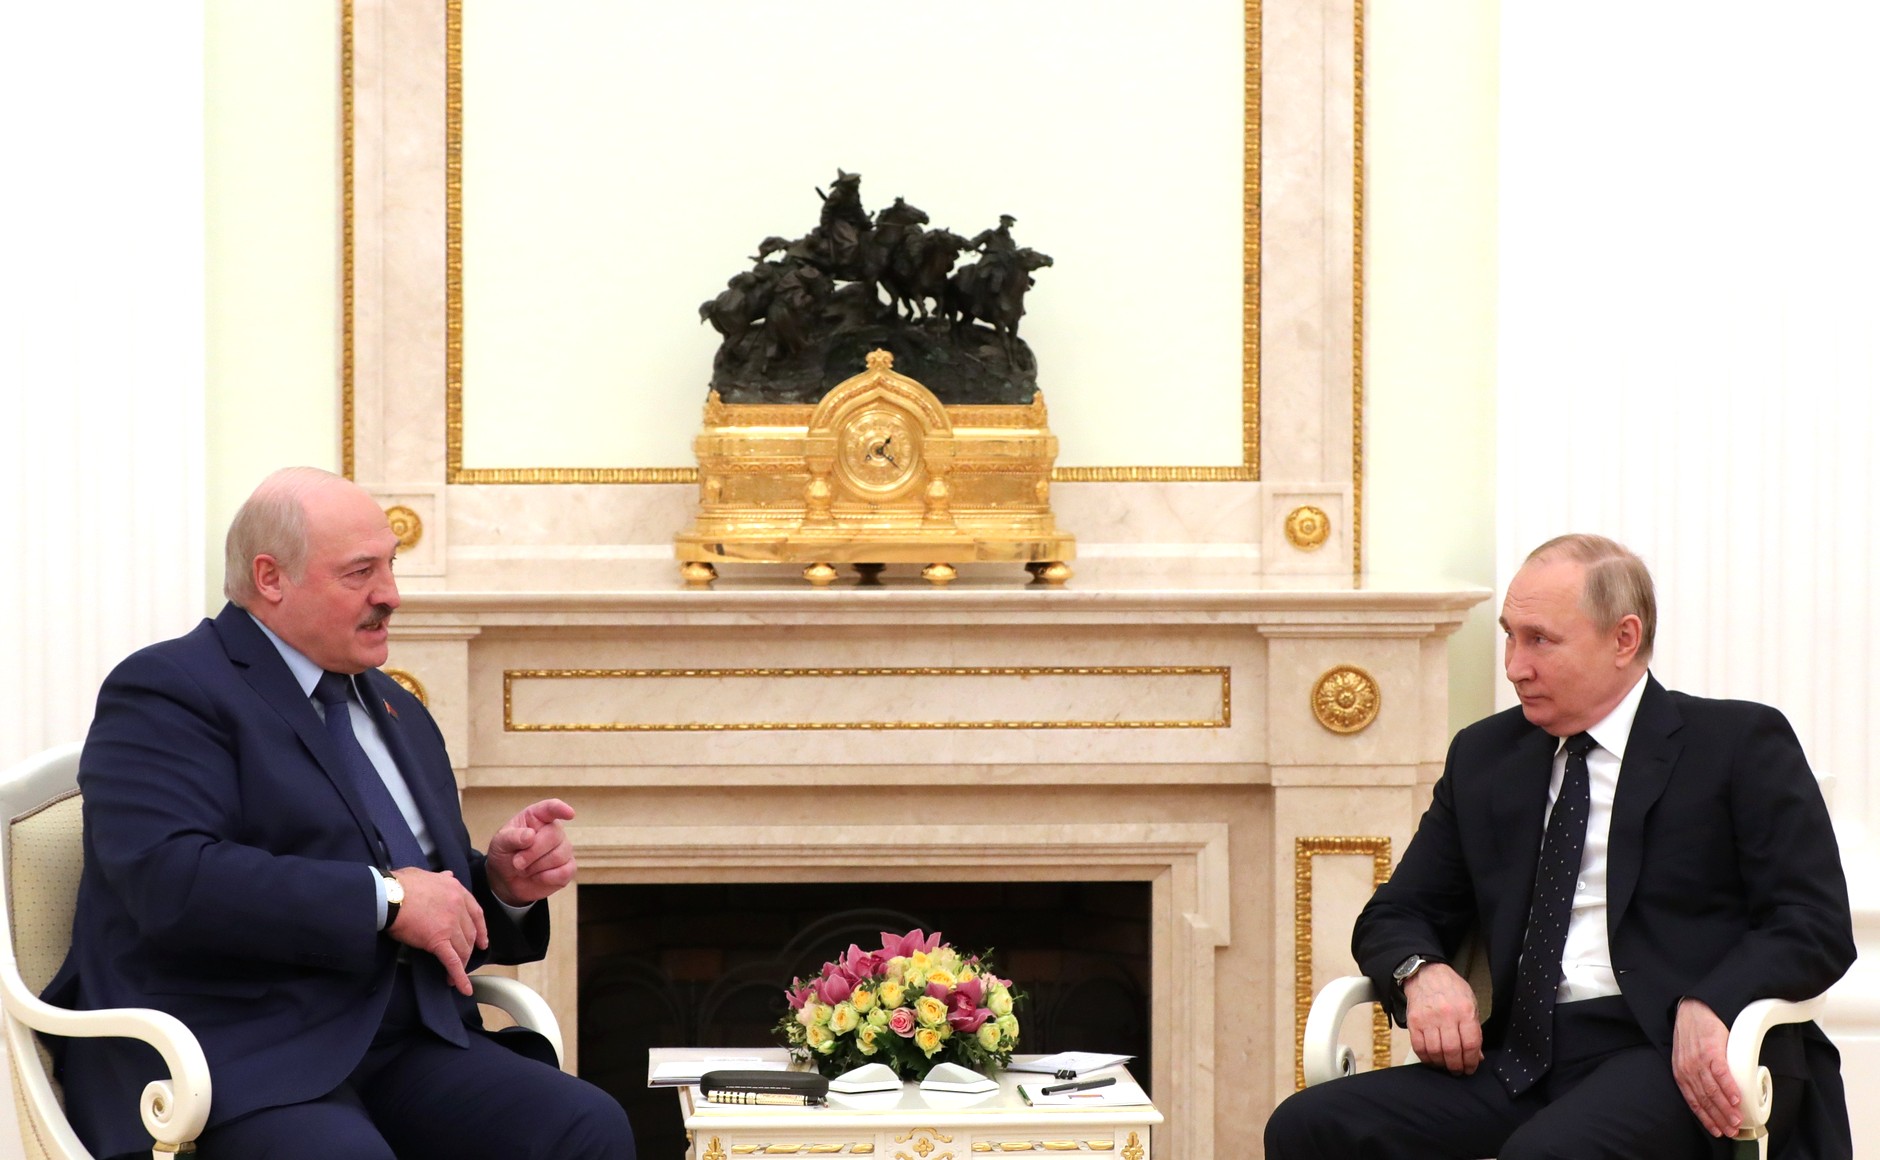 О чем беседовали Путин и Лукашенко? – Взгляд из Минска